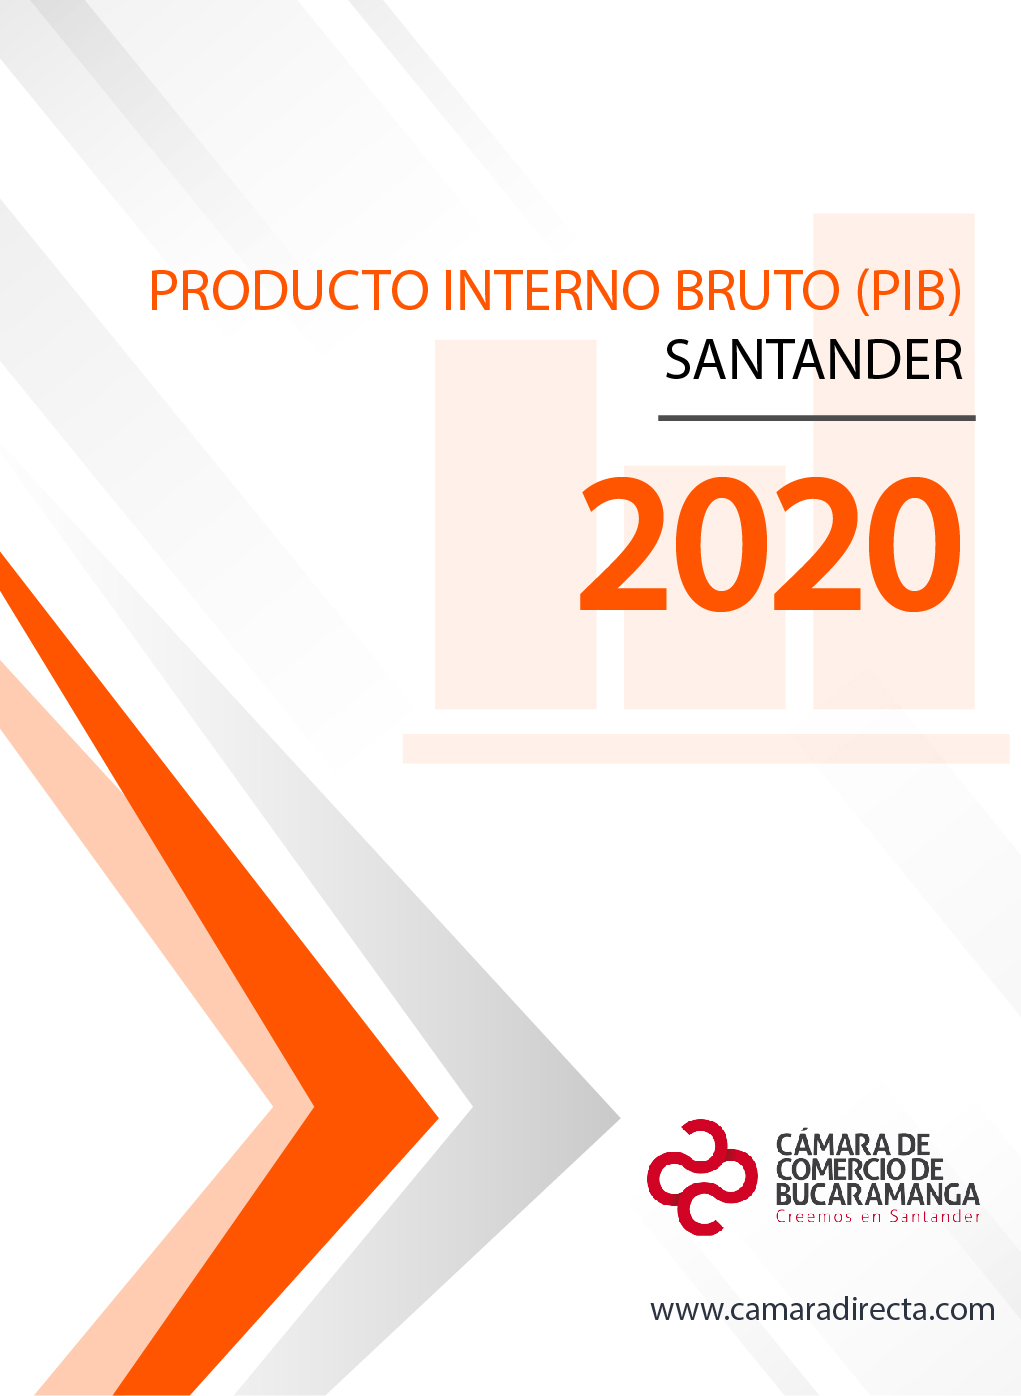 Producto Interno Bruto Santander 2020 - Actualizado